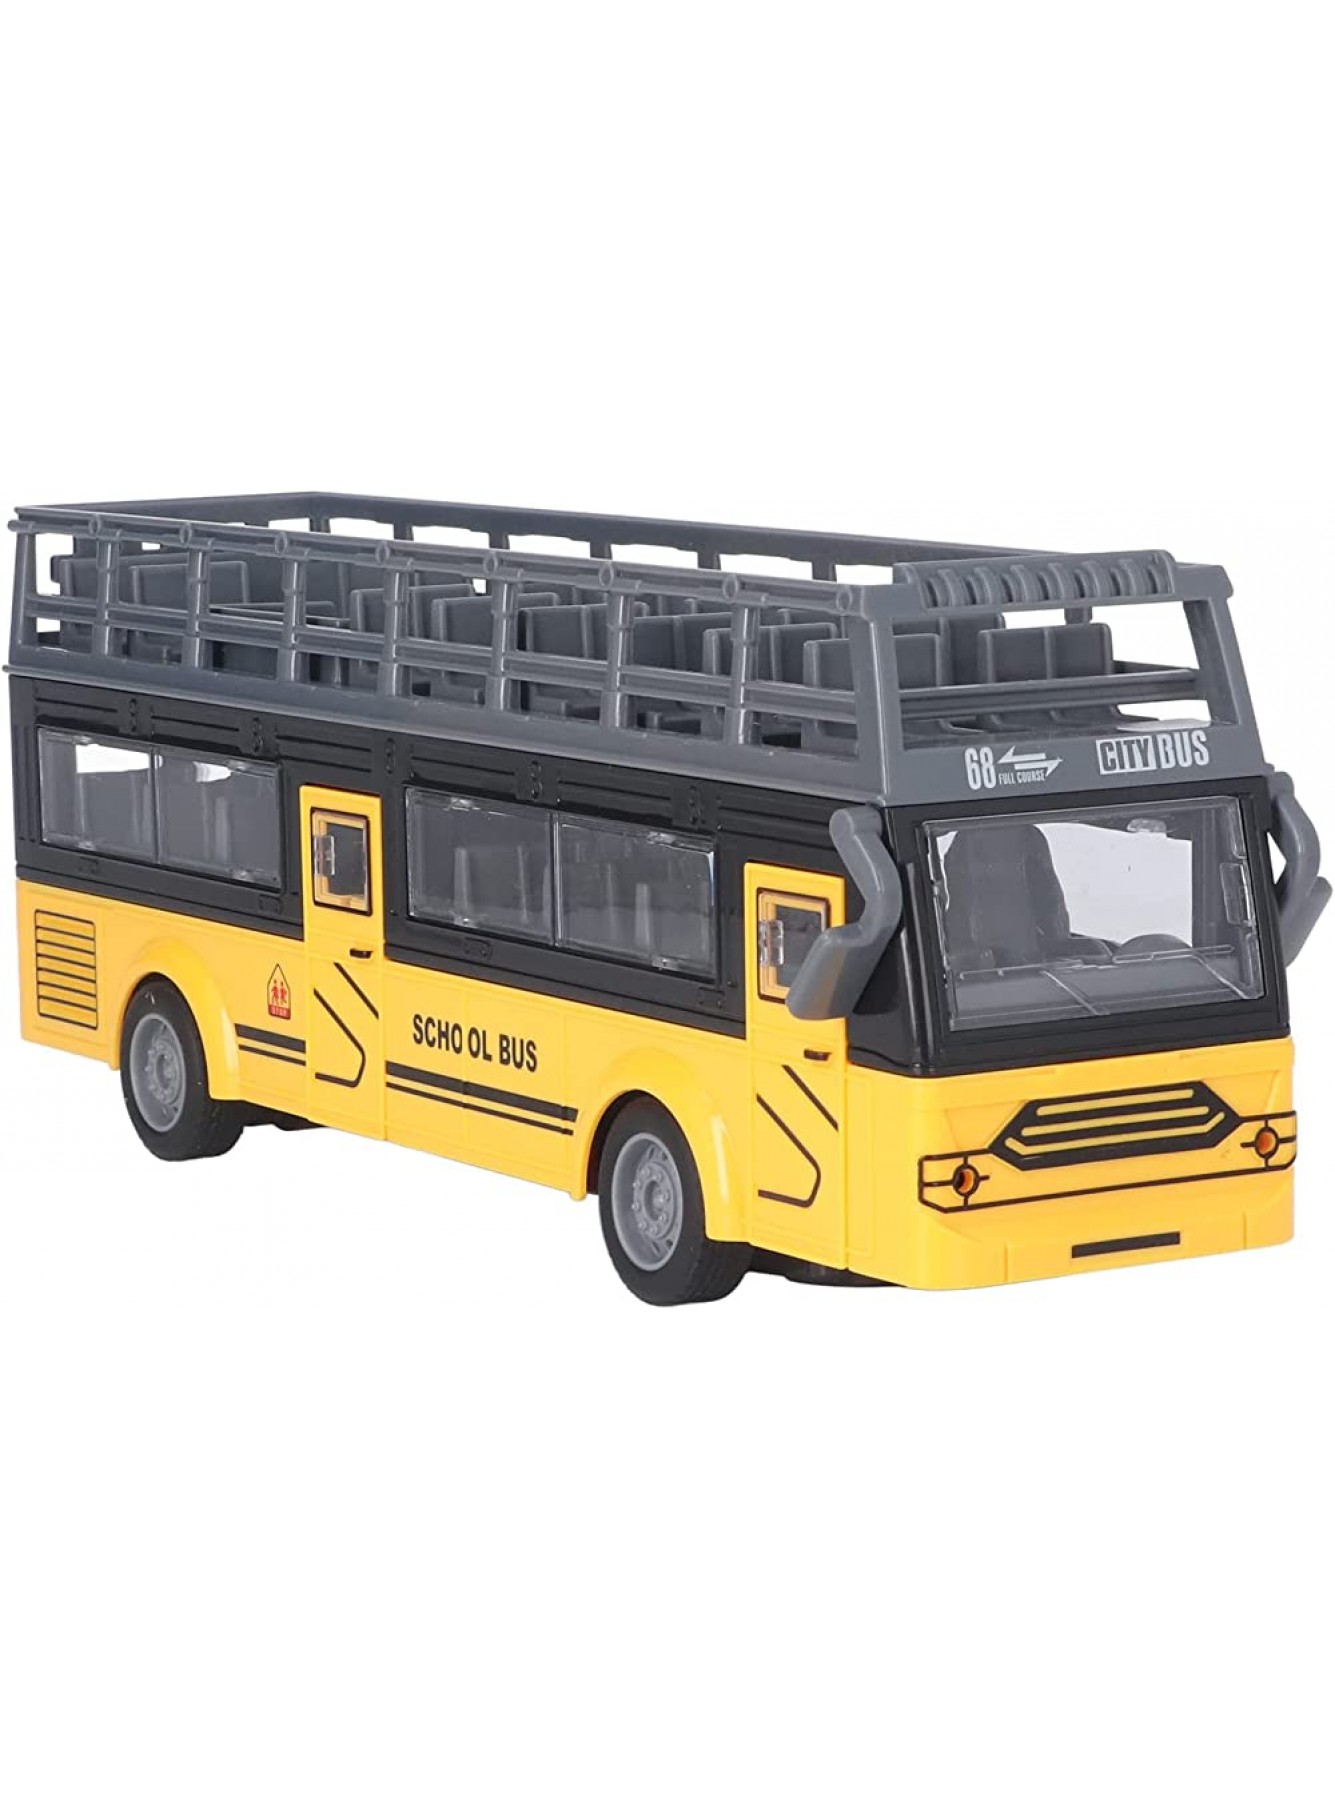 EATC RC-Doppeldeckerbus verhindert Kollisionen feine Details Ferngesteuerter Bus elektrisch hohe Simulation sicher für Spielzeug QH204 7 Schulbus - B0BD47D92C